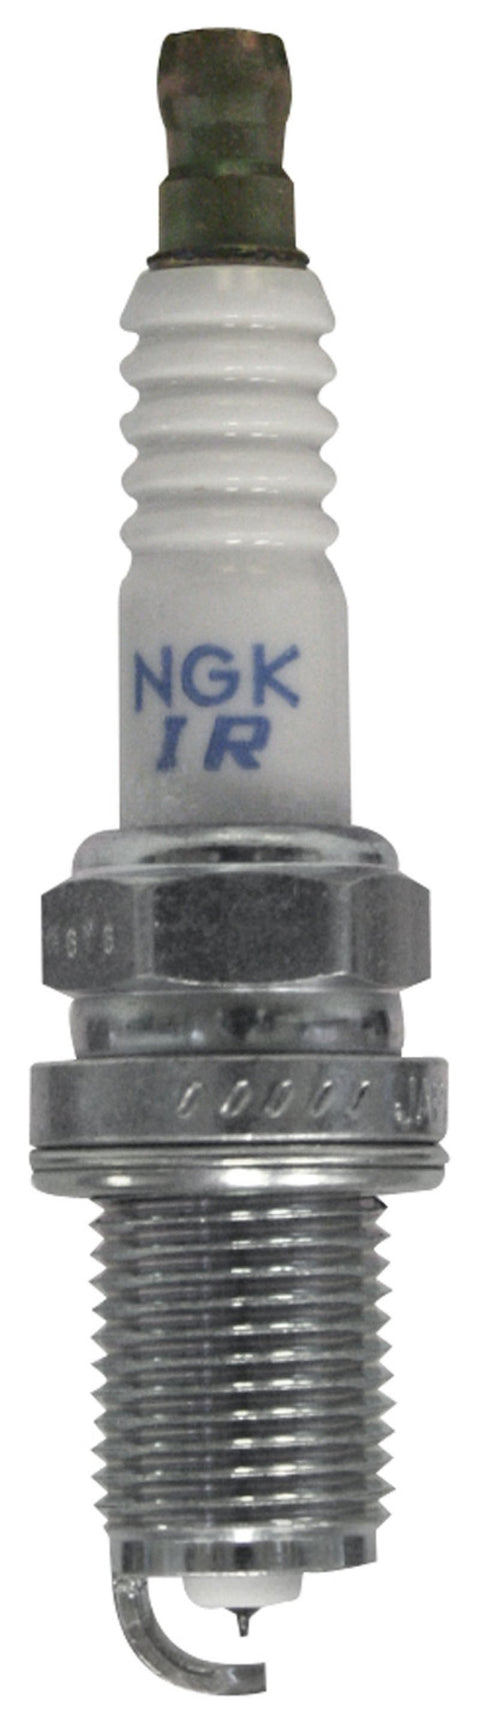 NGK Laser Iridium Spark Plug Box of 4 (5114)